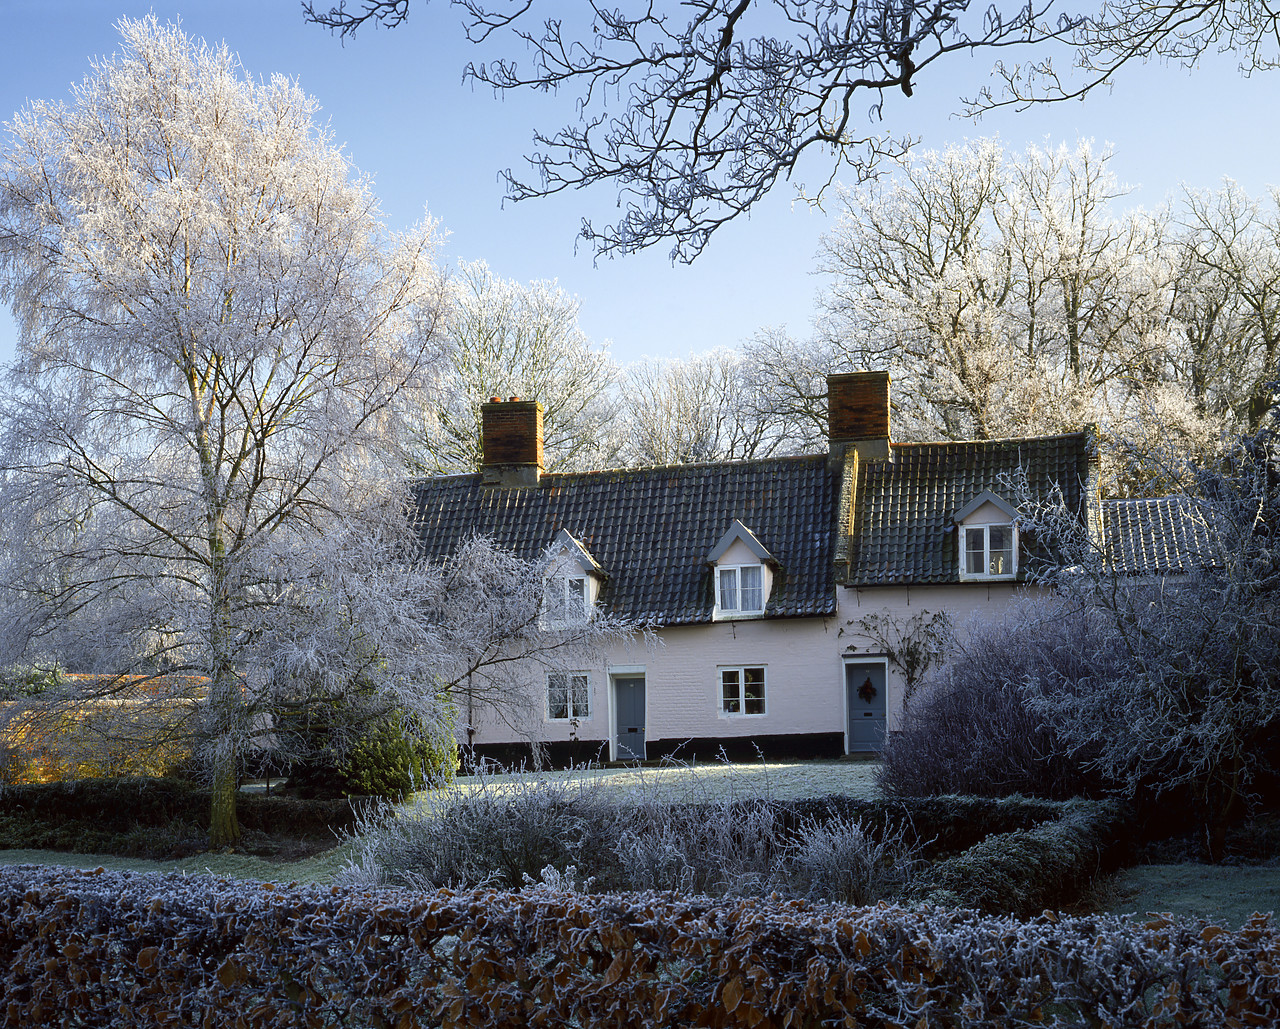 #934157-2 - Cottages in Frost, Blickling, Norfolk, England